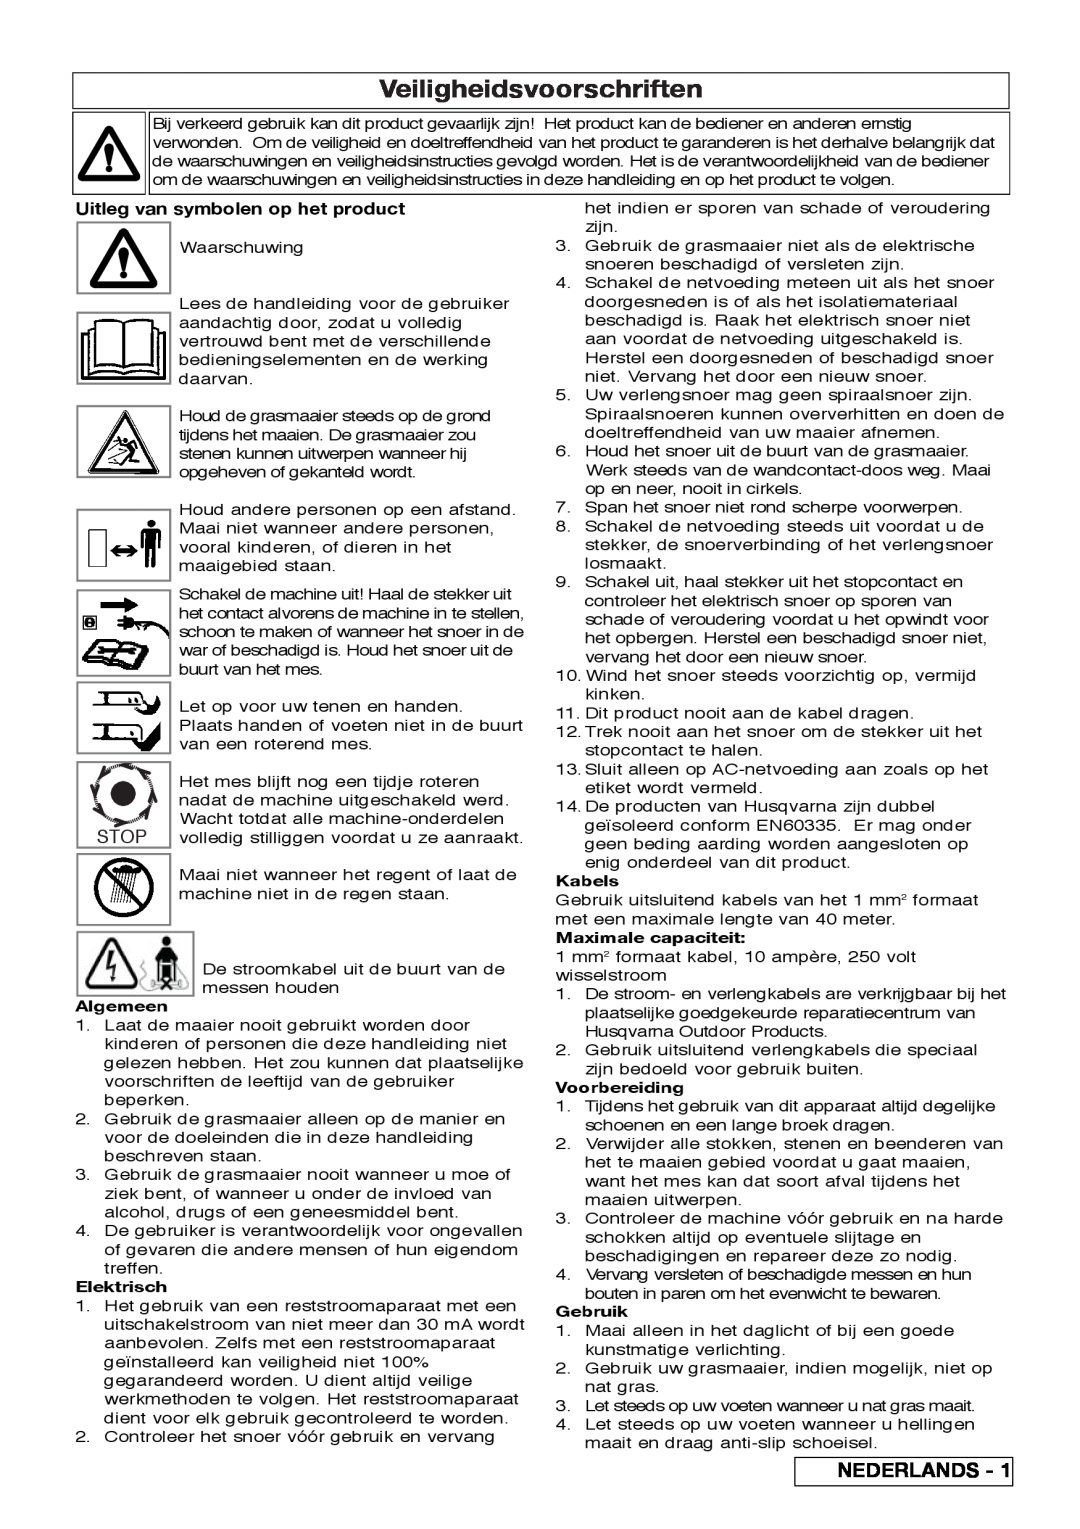 Flymo VM032 manual Veiligheidsvoorschriften, Nederlands, Uitleg van symbolen op het product, Algemeen, Elektrisch, Kabels 